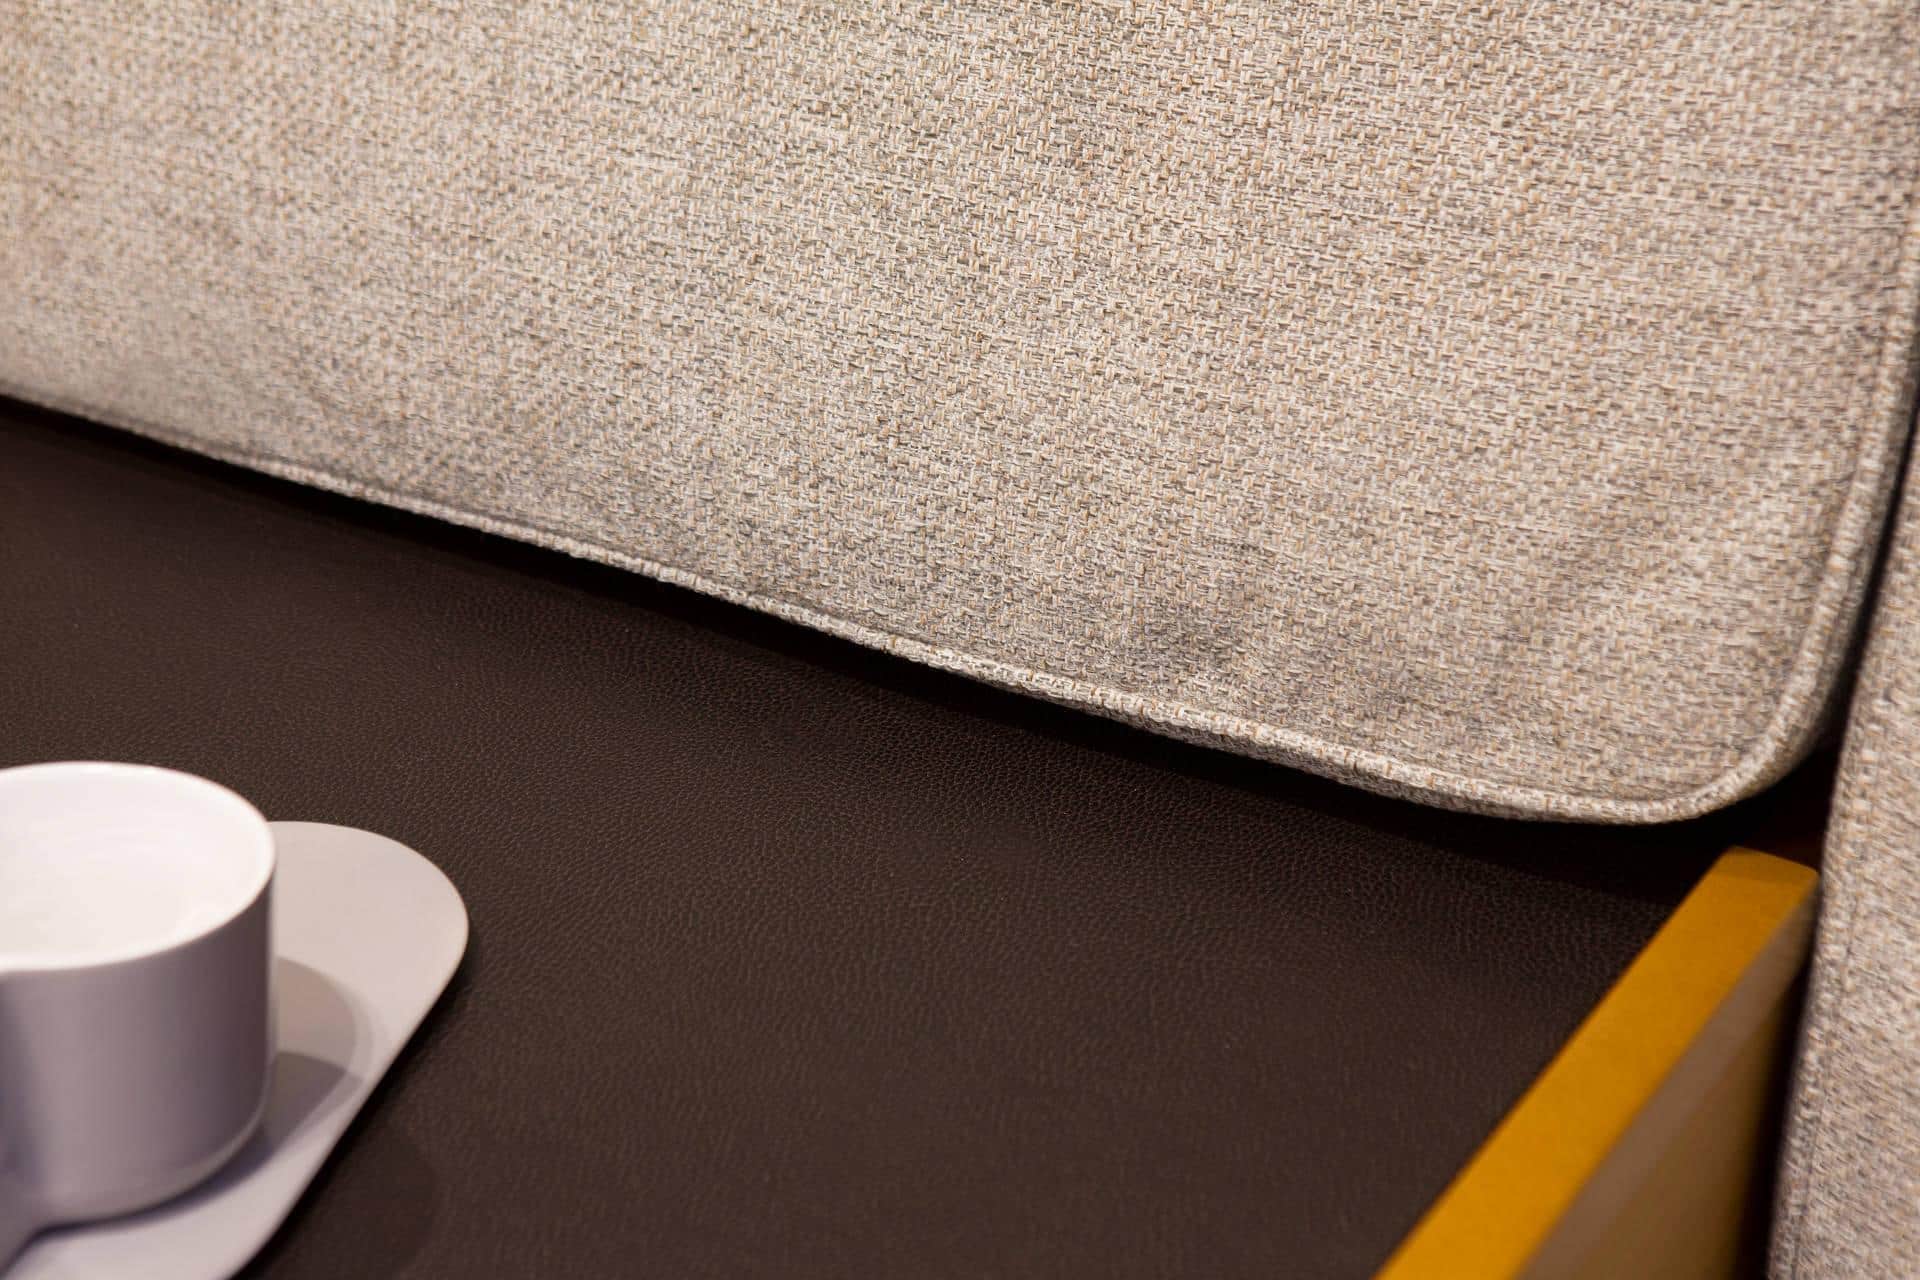 Nahaufnahme einer strukturierten hellgrauen Sofakante mit einer weißen Kaffeetasse auf einer Untertasse und einem gelben Bleistift auf der dunklen, matten Oberfläche eines Katamarans daneben.